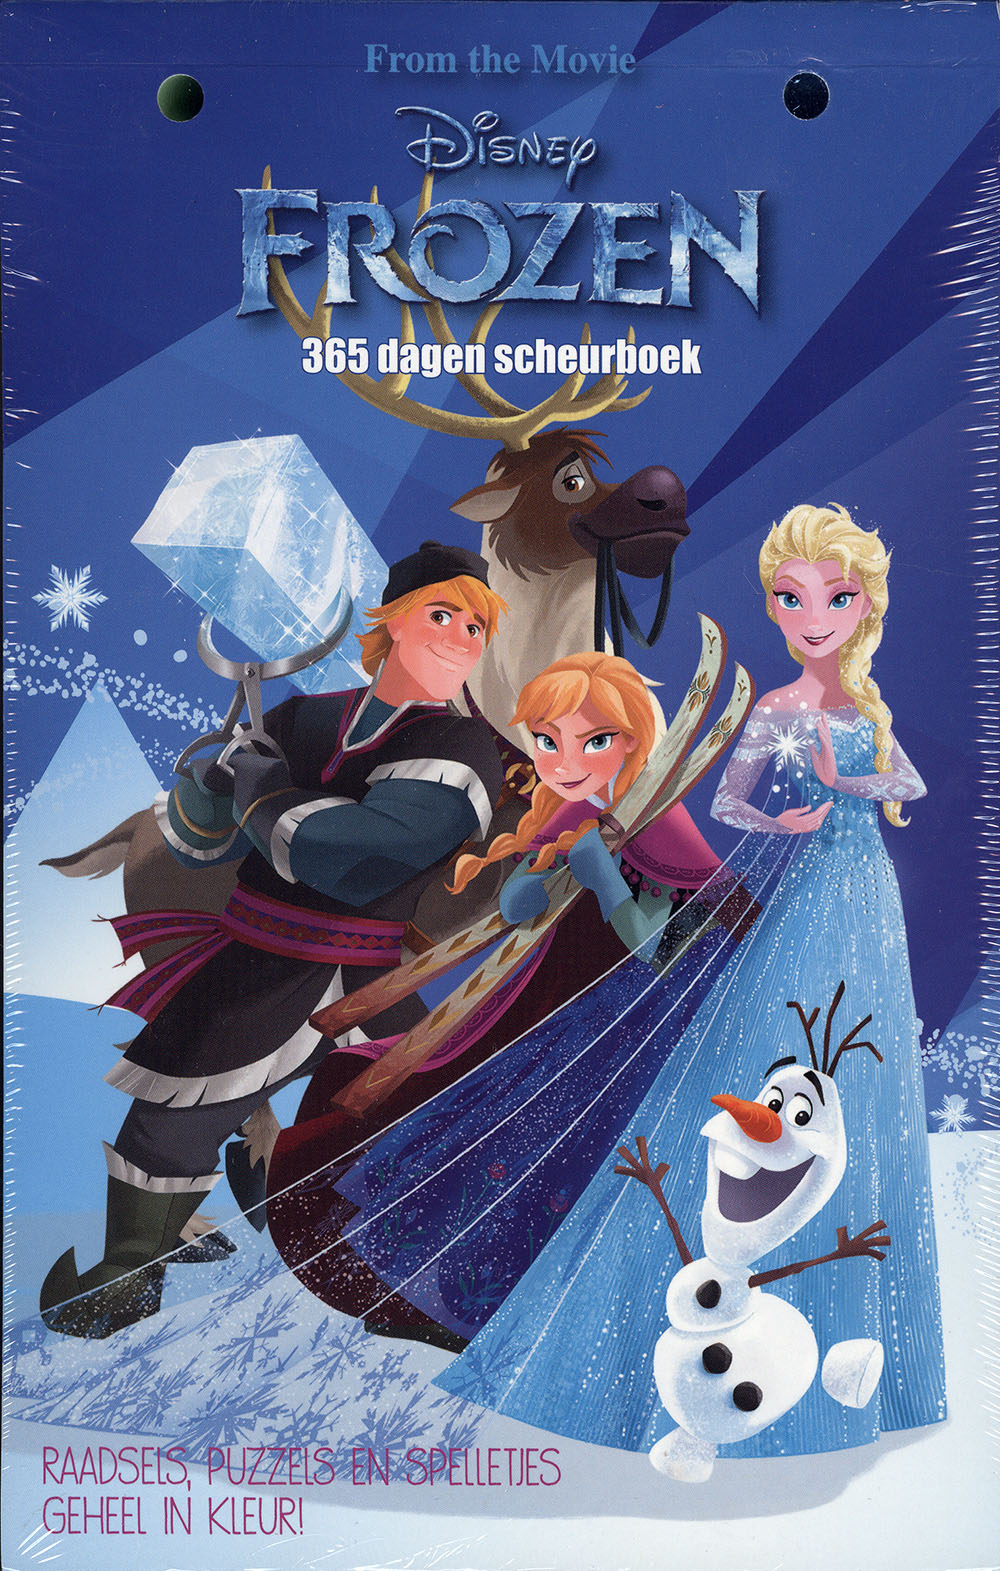 steekpenningen spoelen racket Disney Frozen 365 dagen scheurboek - StripboekenHandel.nl